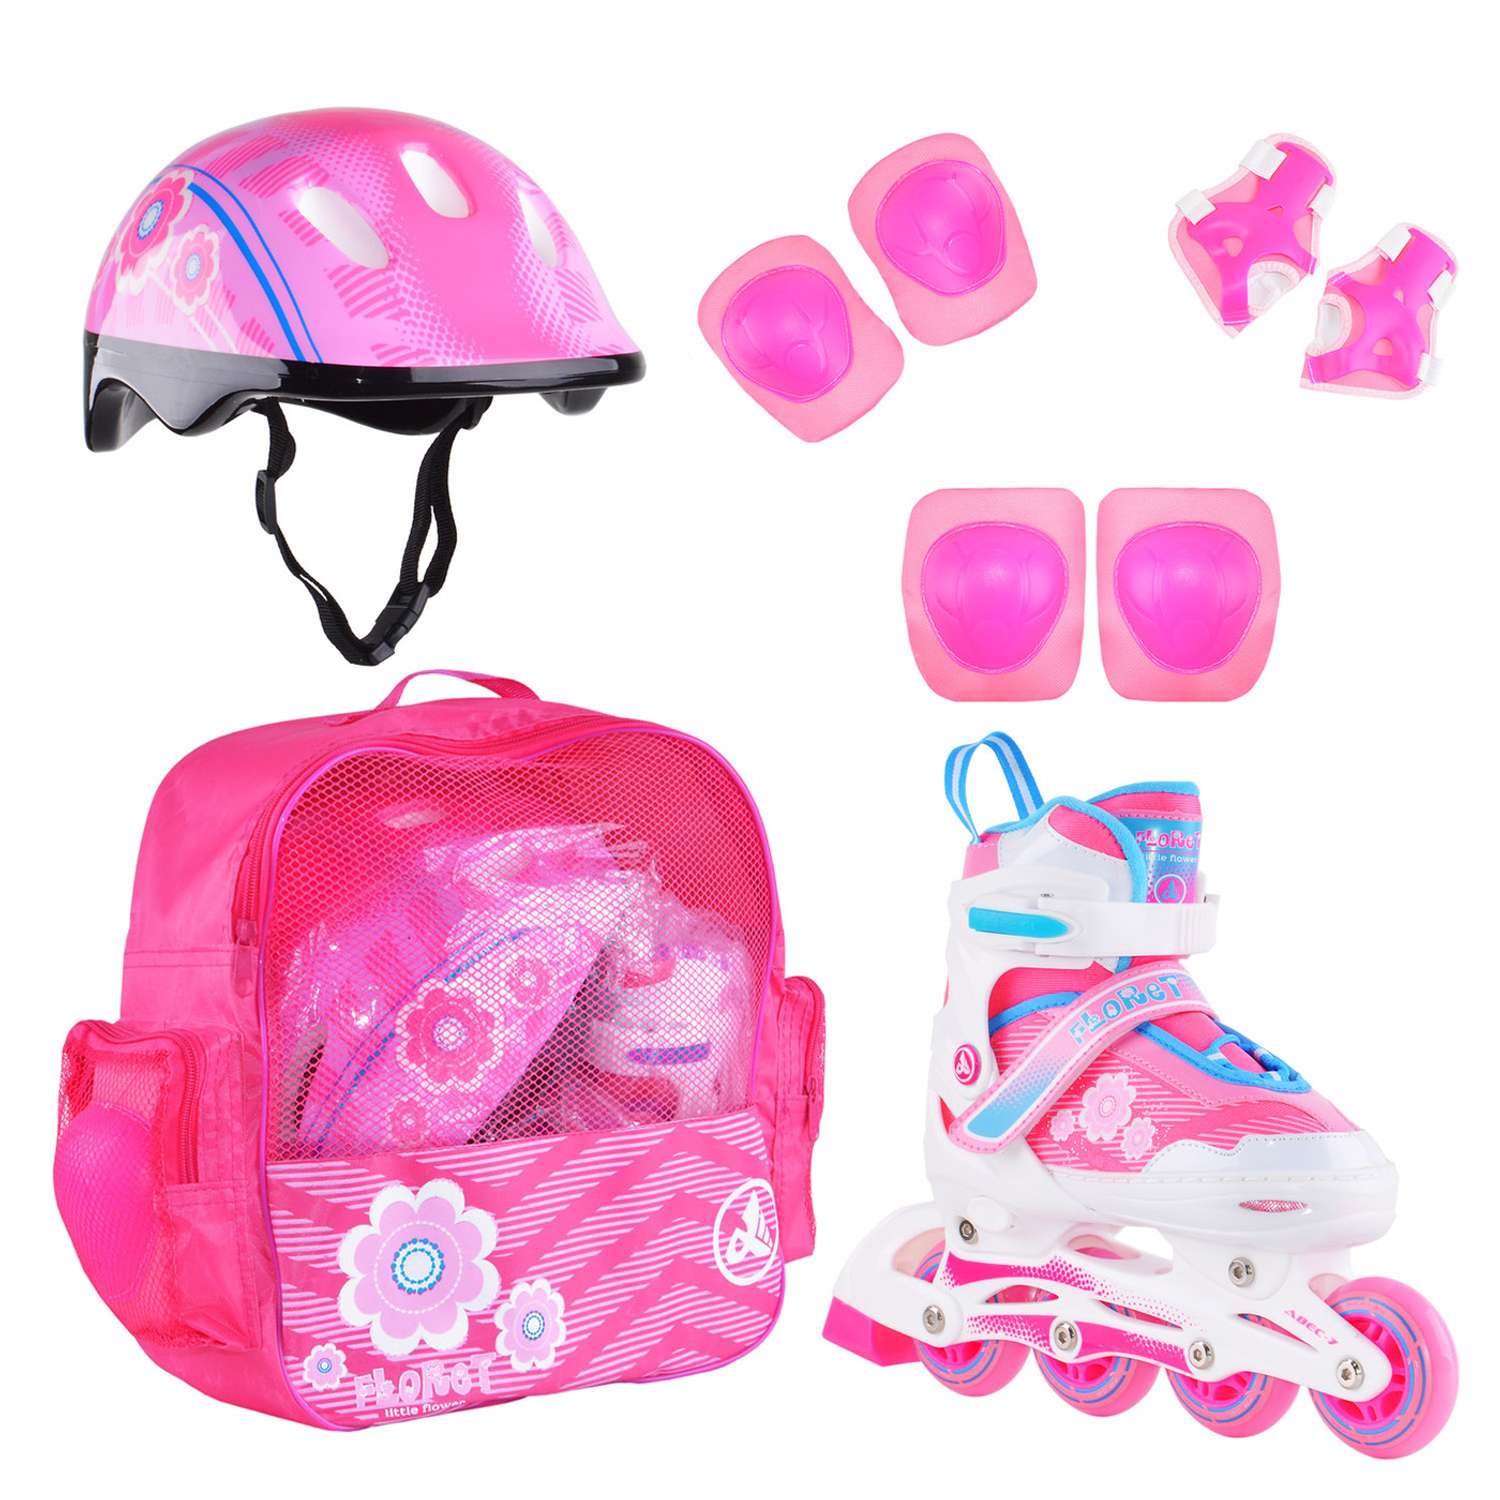 Набор роликовые коньки Alpha Caprice раздвижные Floret White Pink Blue шлем и набор защиты в сумке размер M 35-38 - фото 1